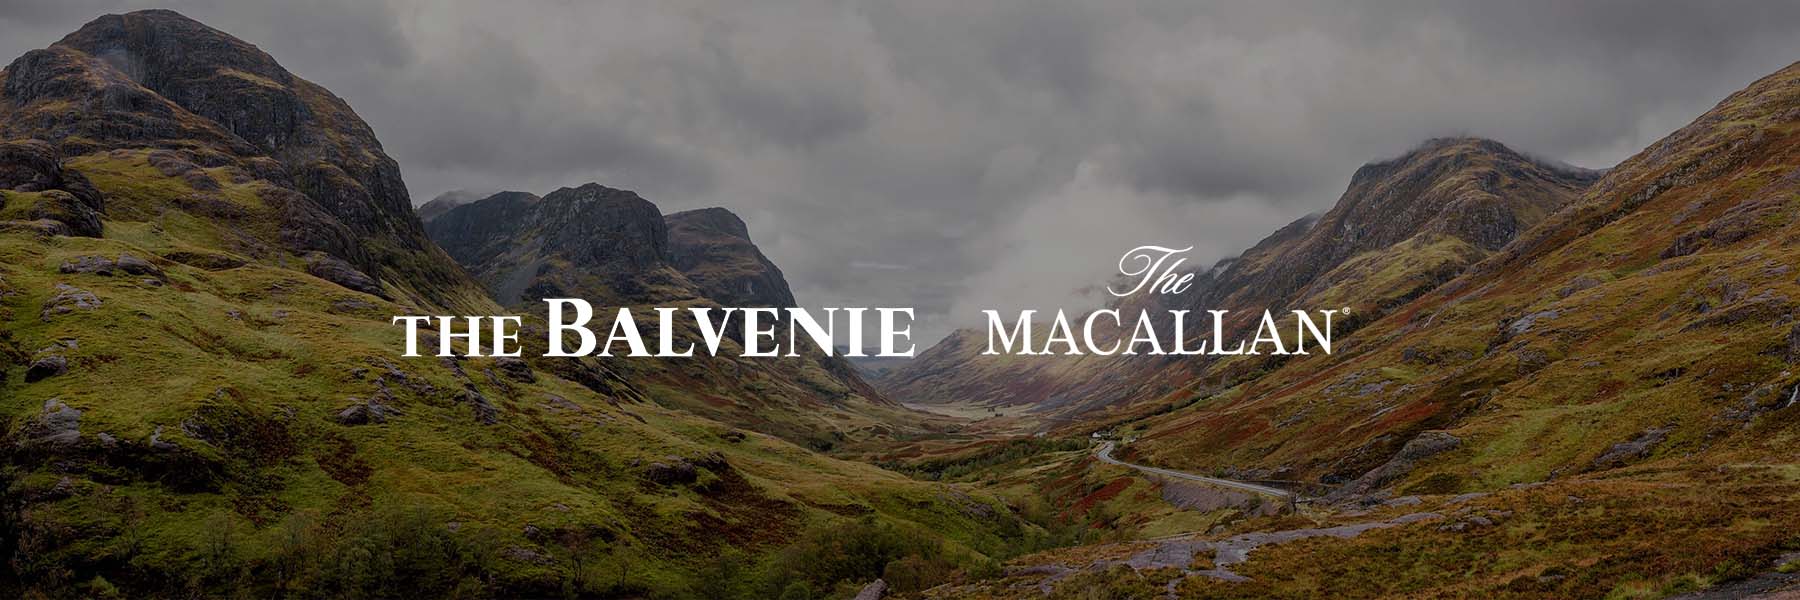 Balvenie vs Macallan